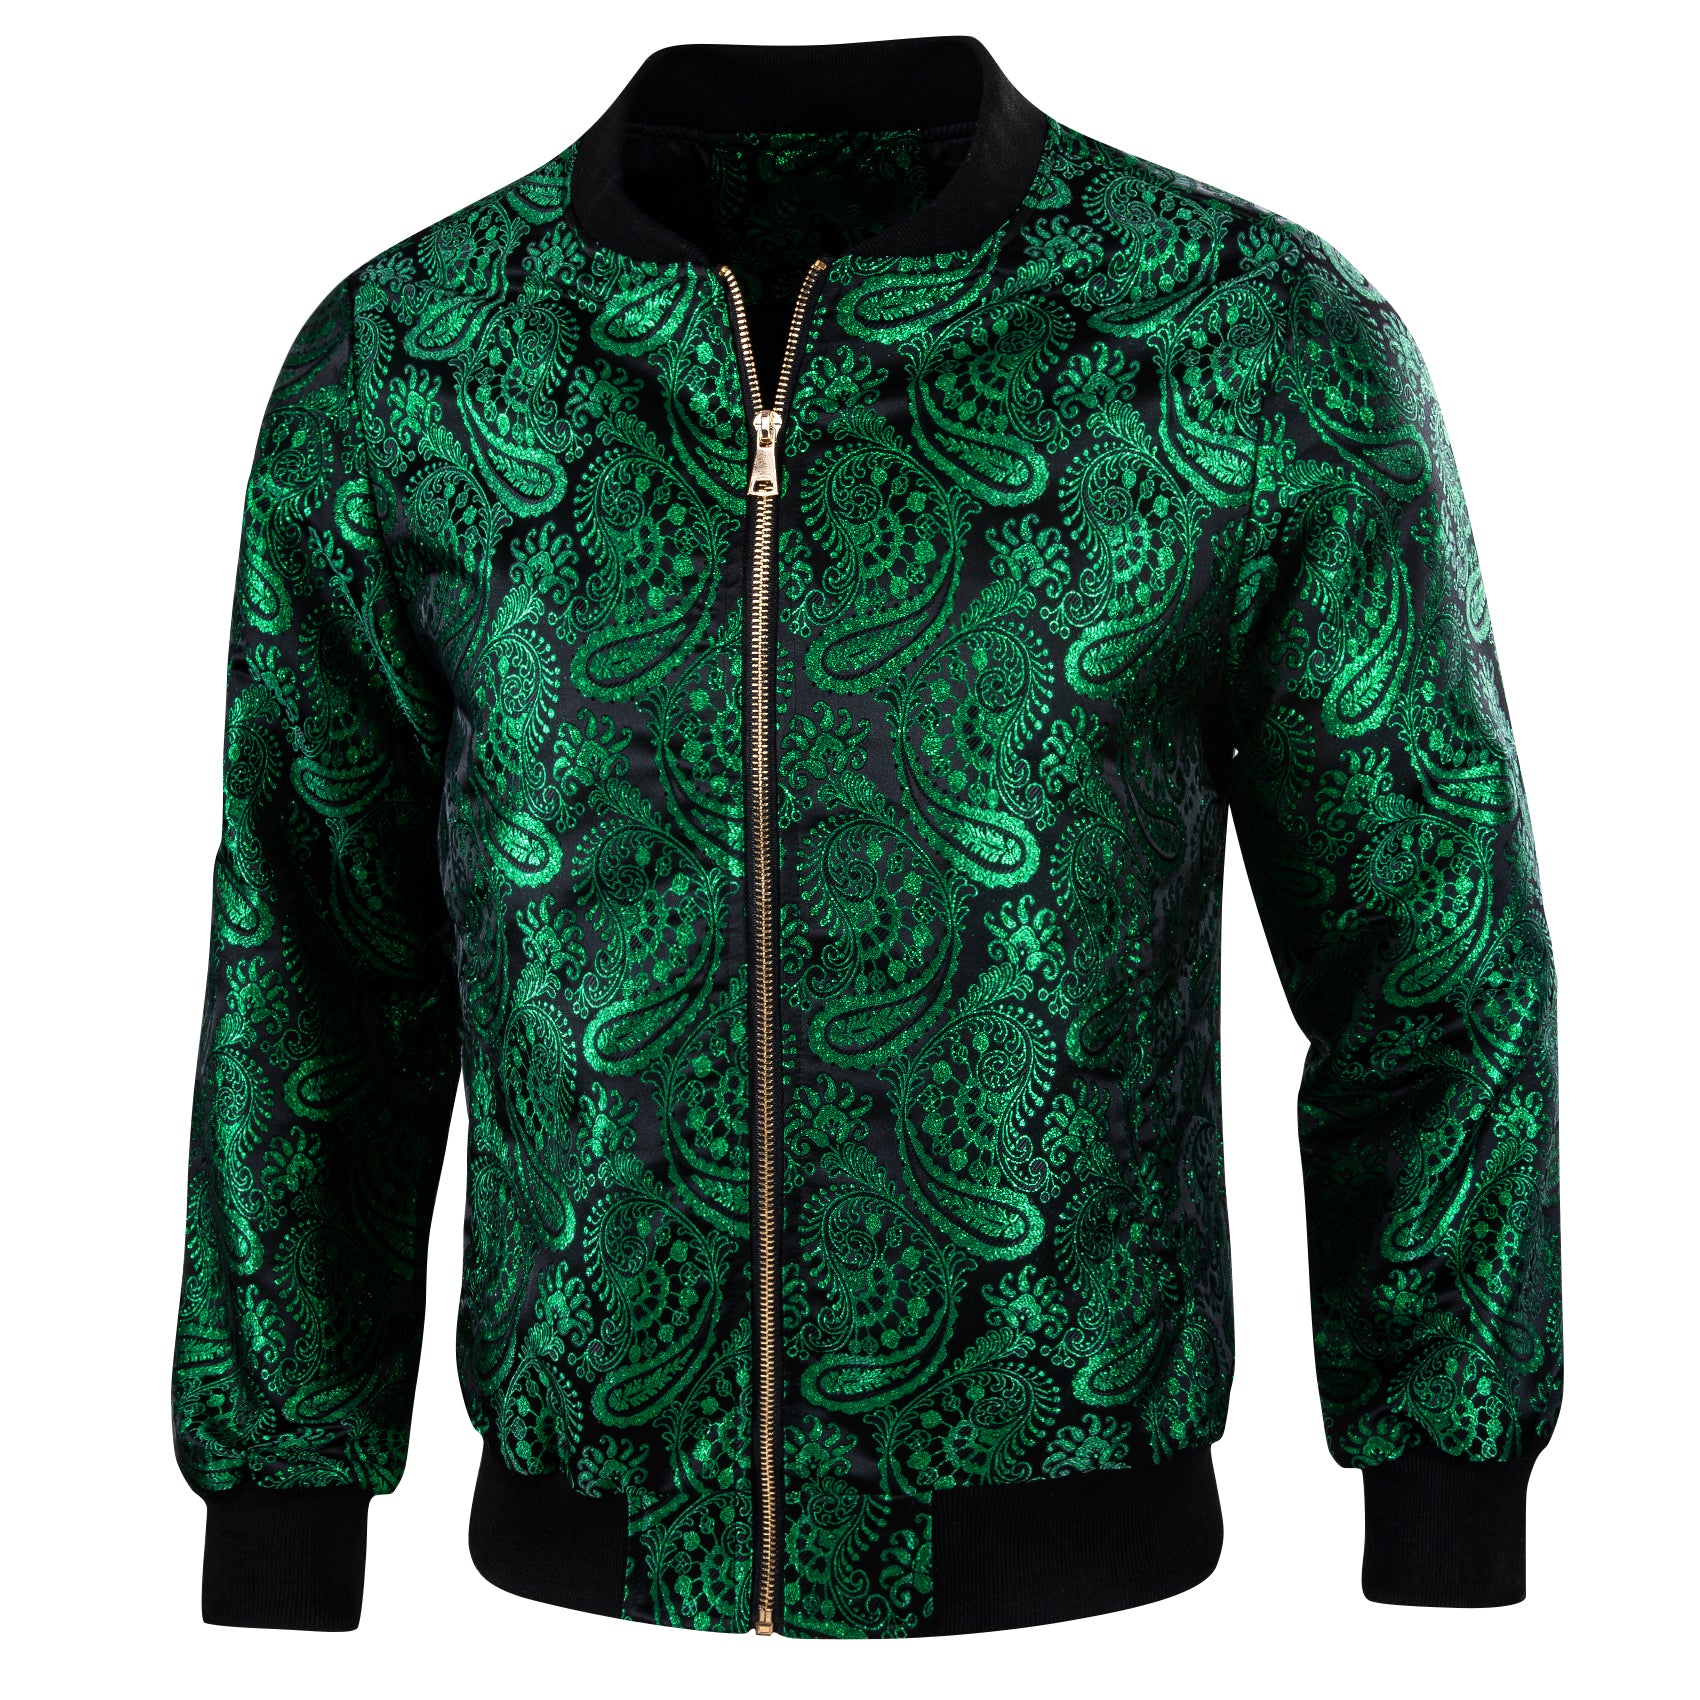 Mens Green Black Floral Jacquard Paisley Jacket